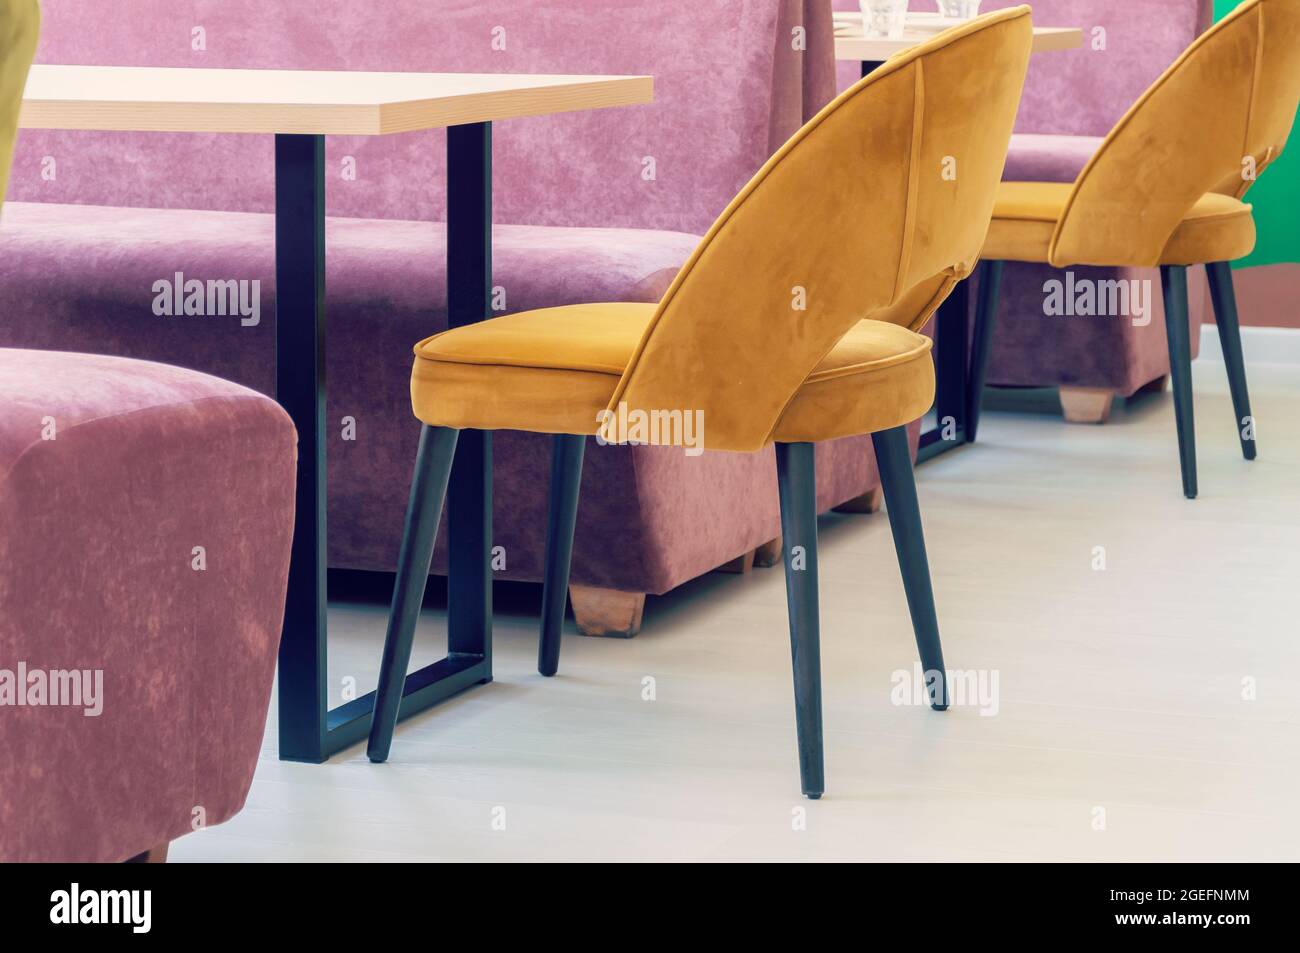 Eine Reihe von Tischen mit weichen, komfortablen violetten Stühlen für Besucher des Food Court eines modernen Einkaufszentrums Stockfoto